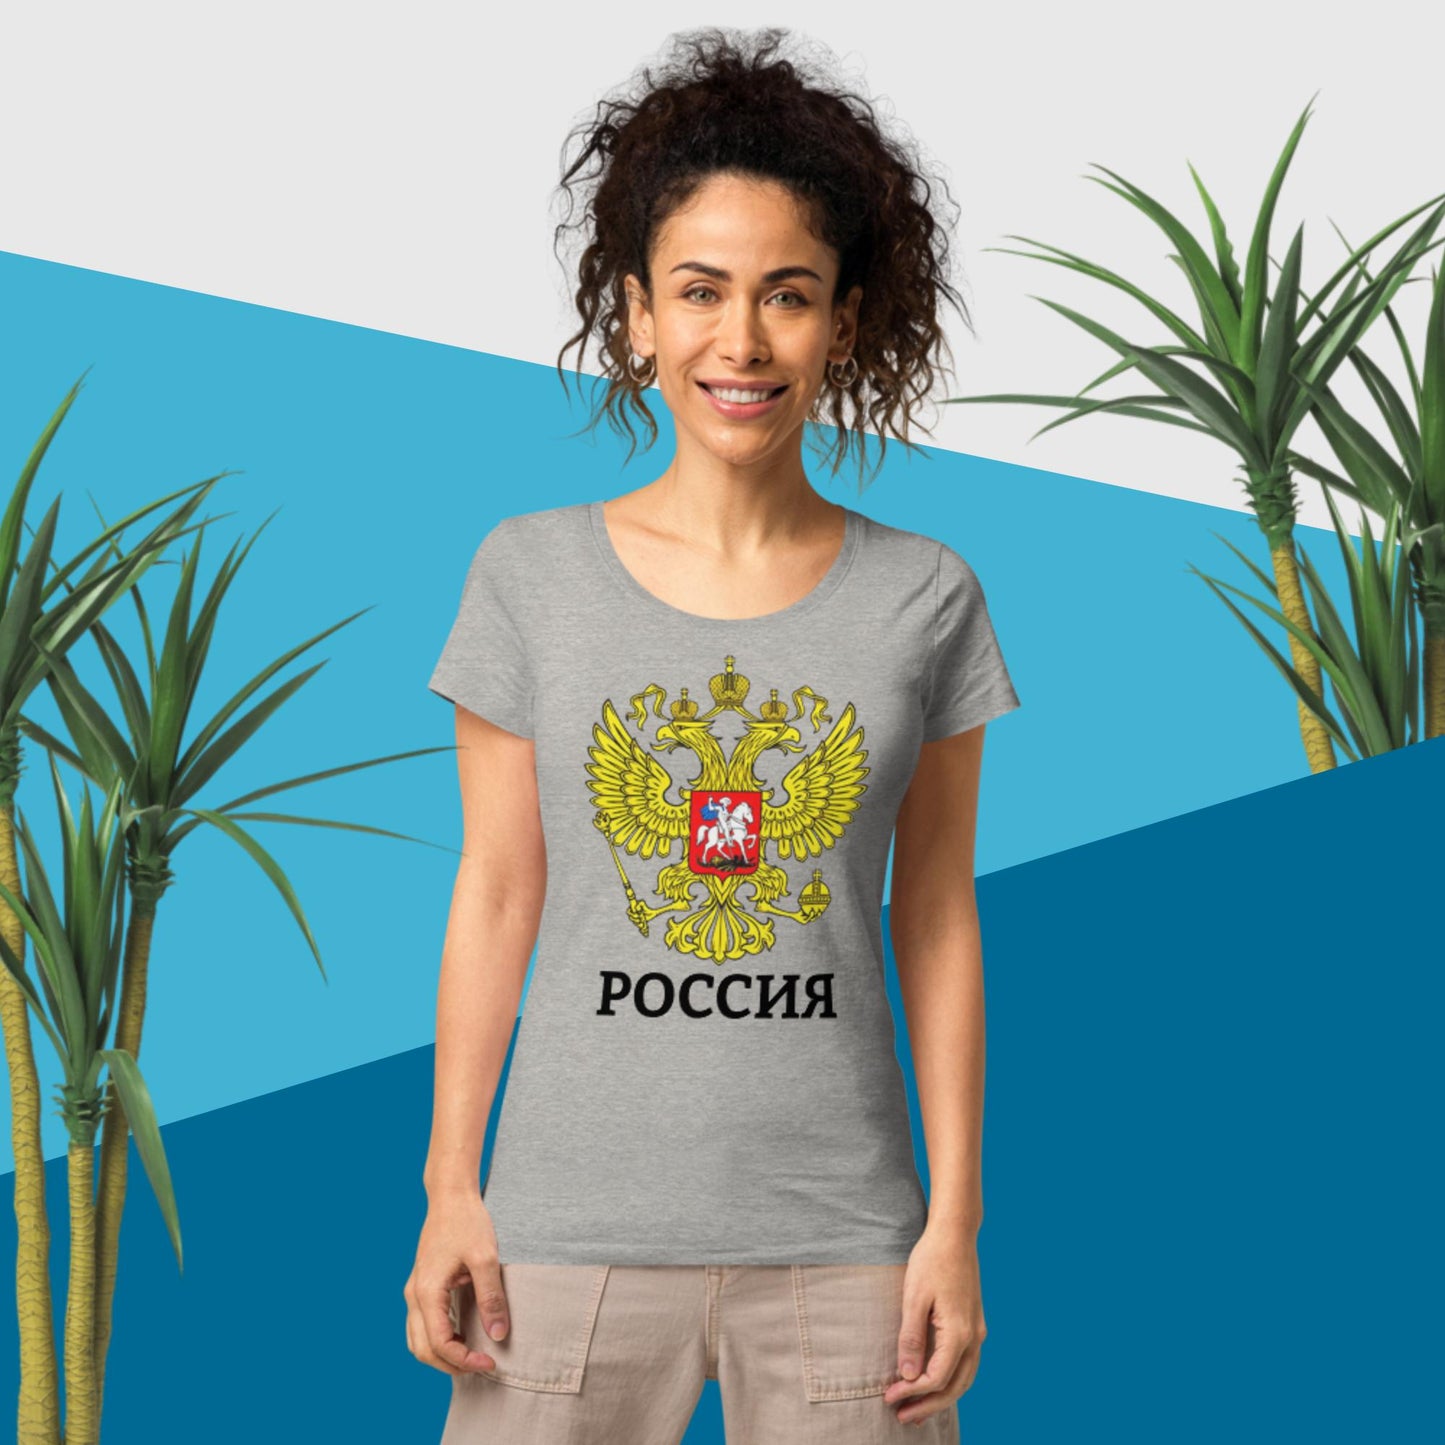 Russland Basic Bio-T-Shirt für Damen in weiteren verschiedenen Farben